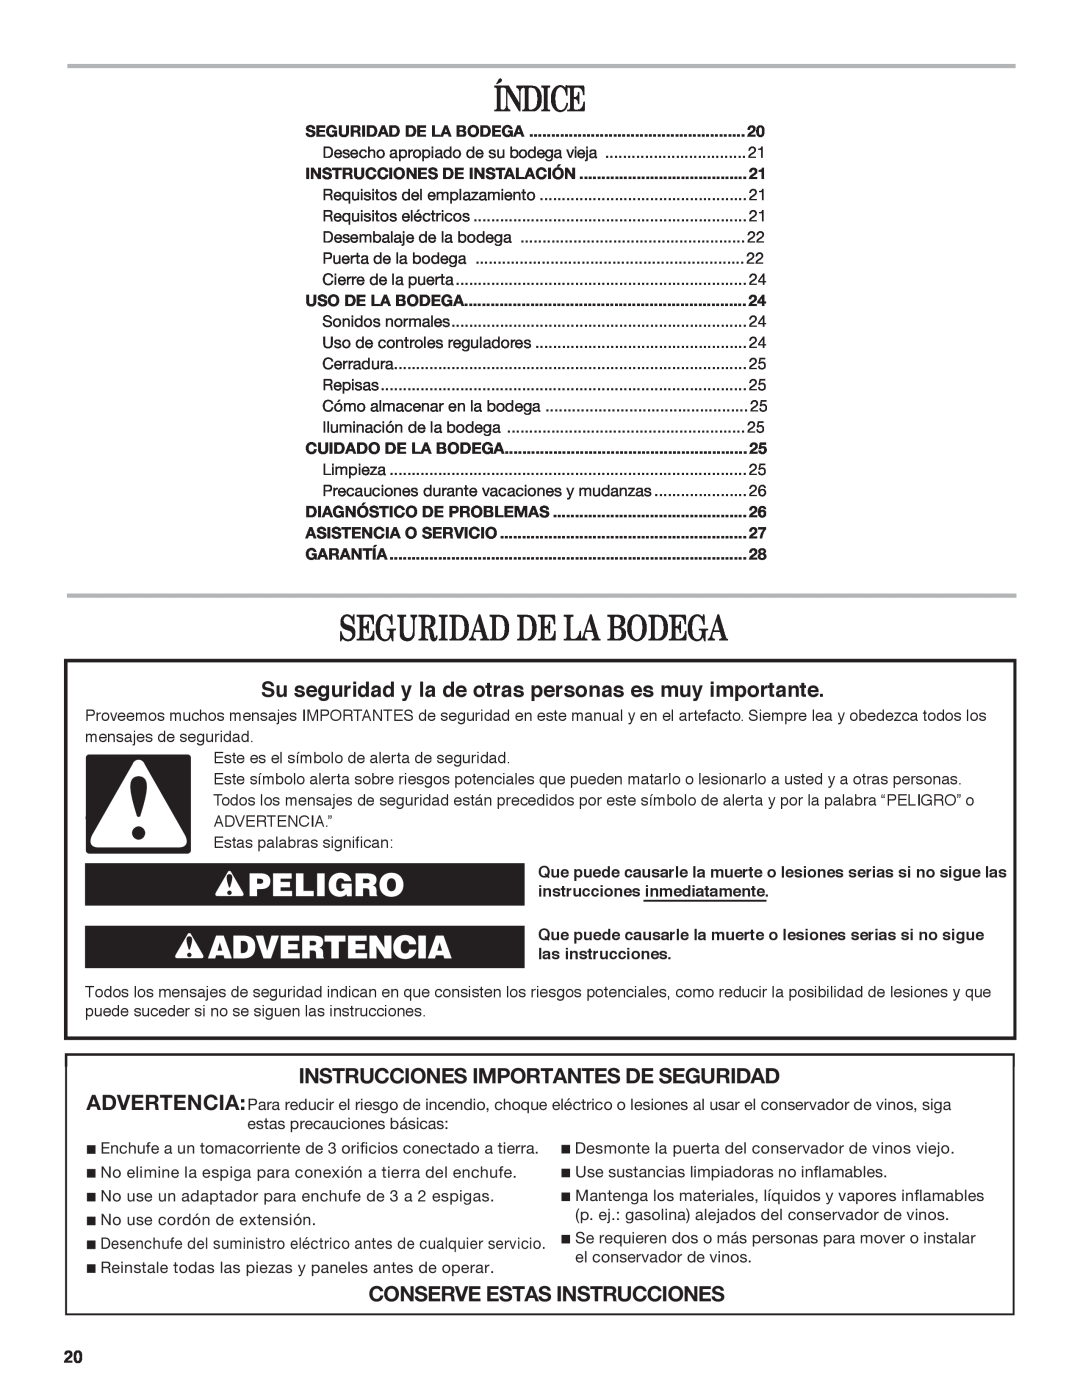 Whirlpool WWC4589BLS manual Índice, Seguridad De La Bodega, Peligro Advertencia, Instrucciones Importantes De Seguridad 